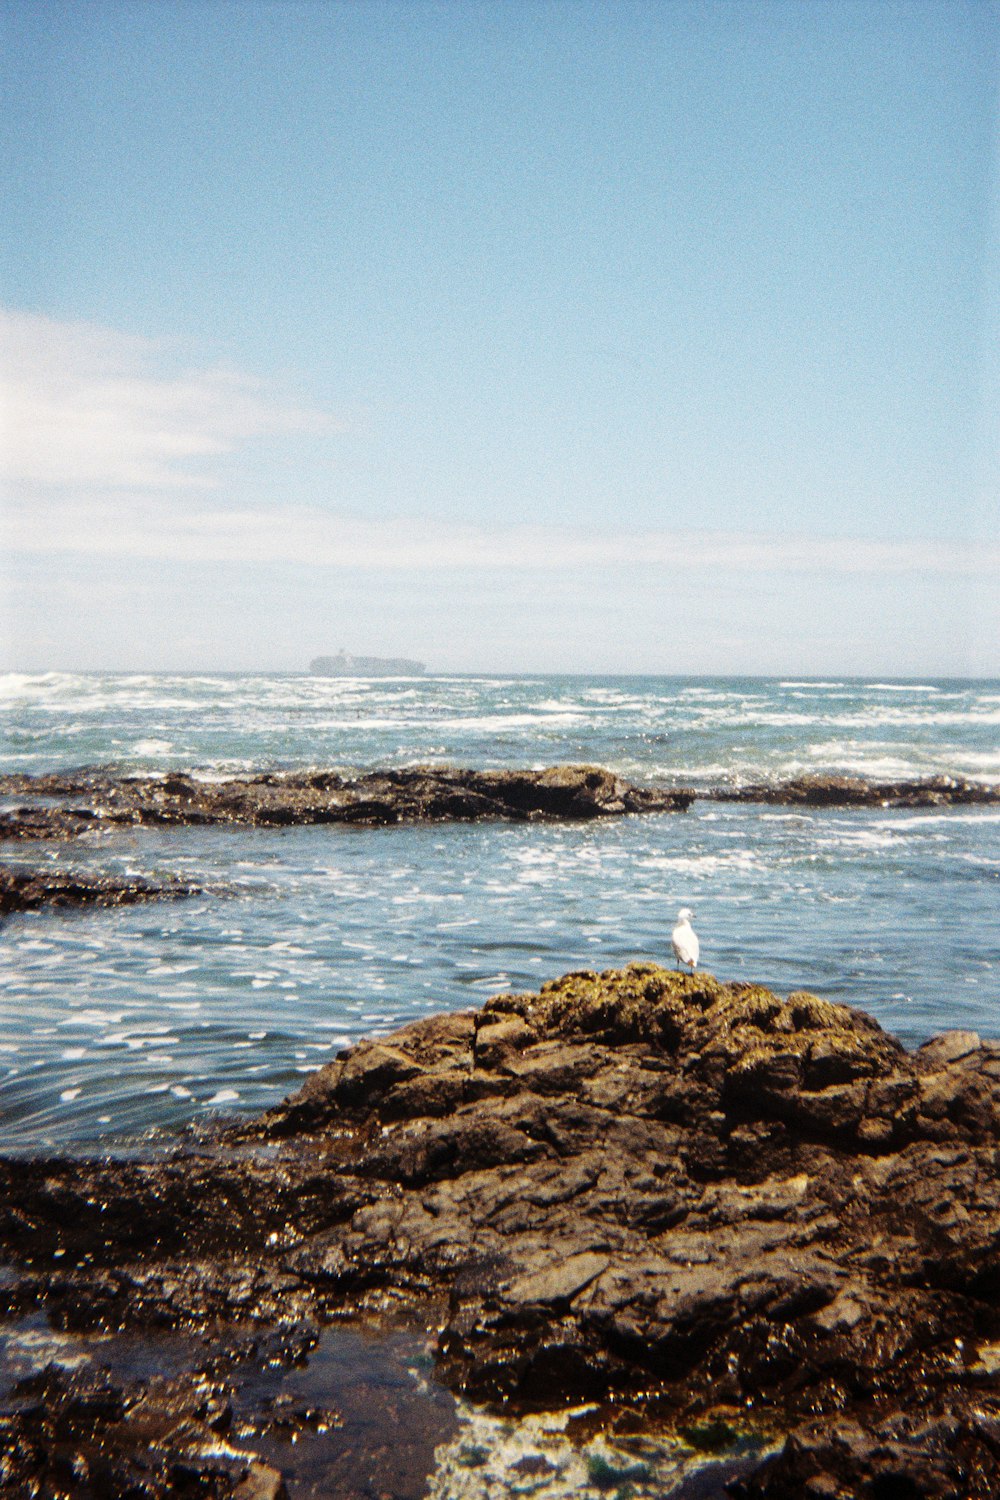 a bird is standing on a rock near the ocean